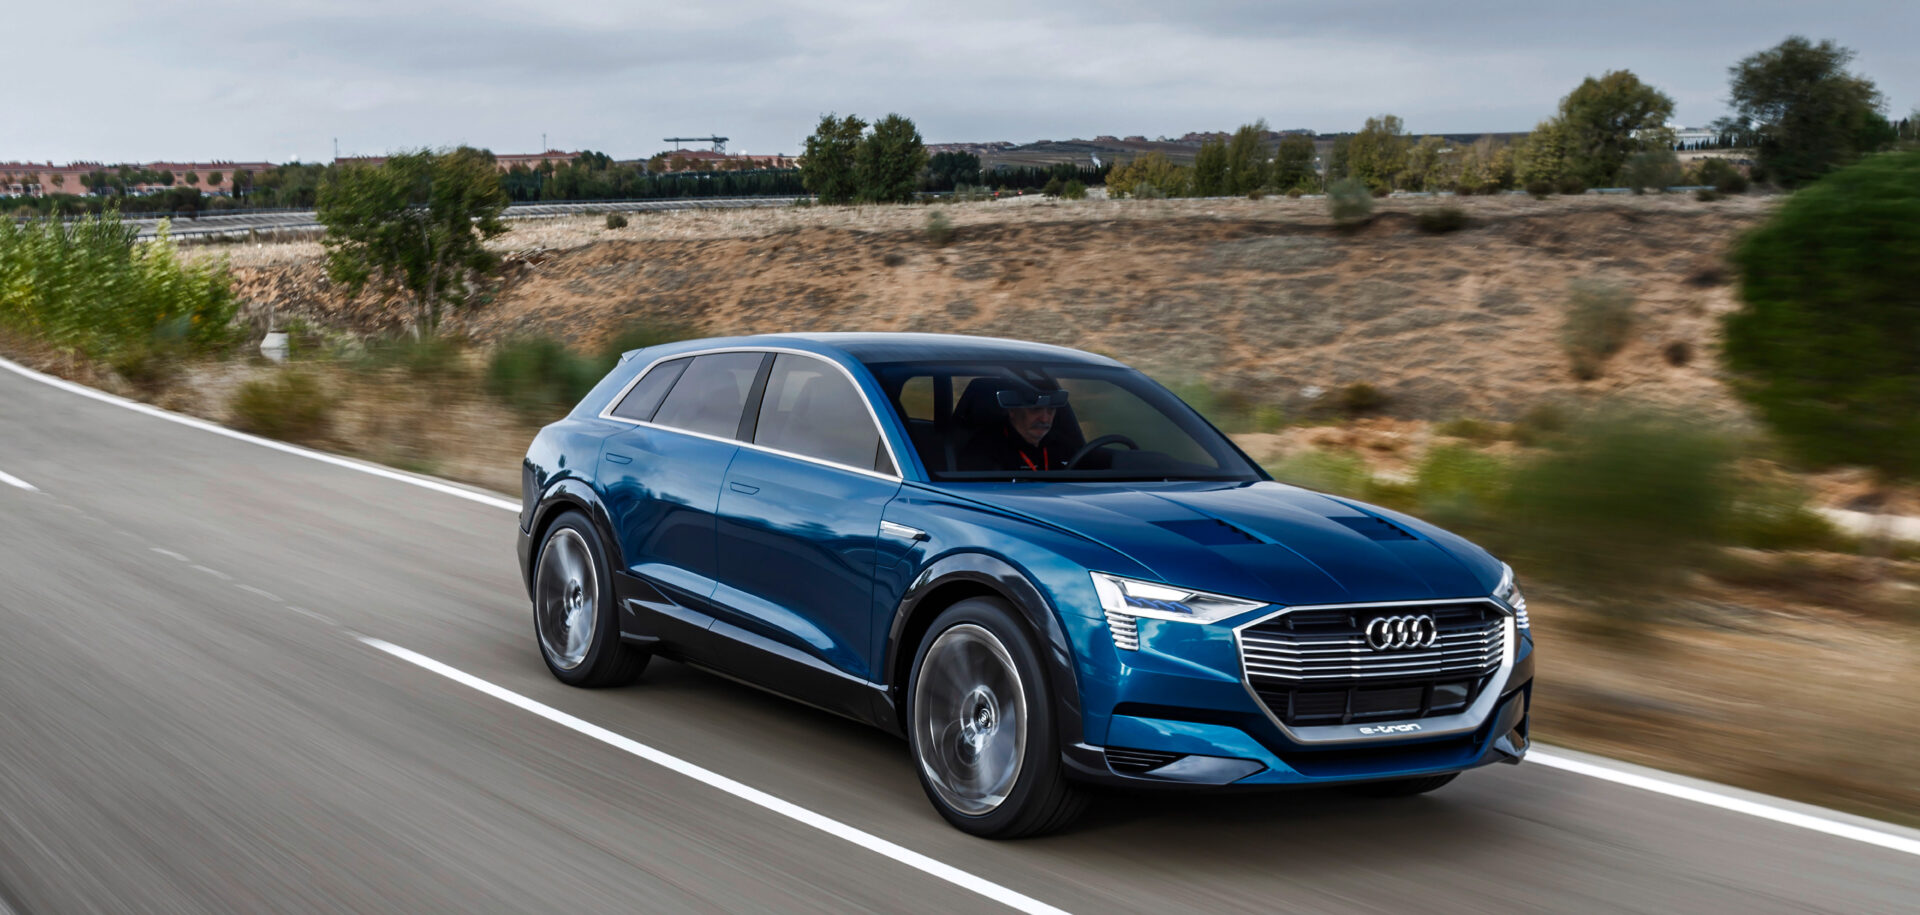 La concept car Audi e-tron quattro